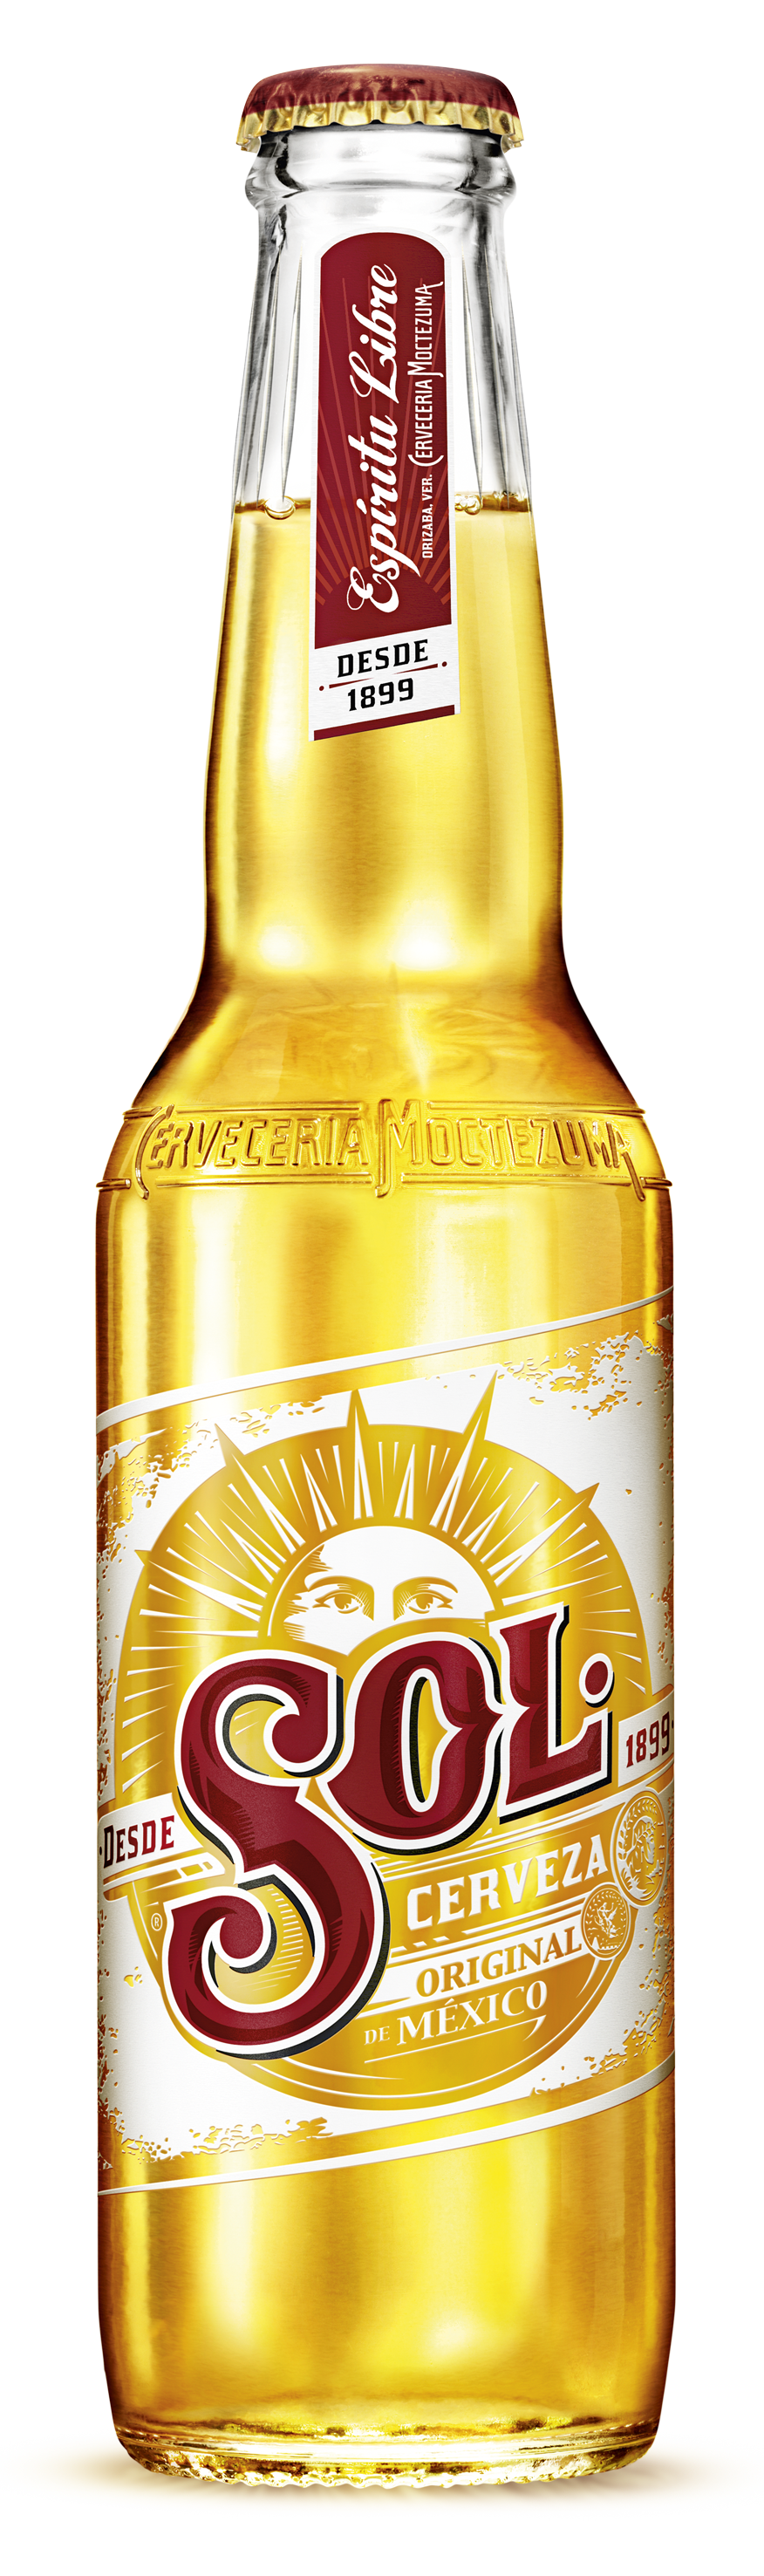 sol-beer-brewery-international